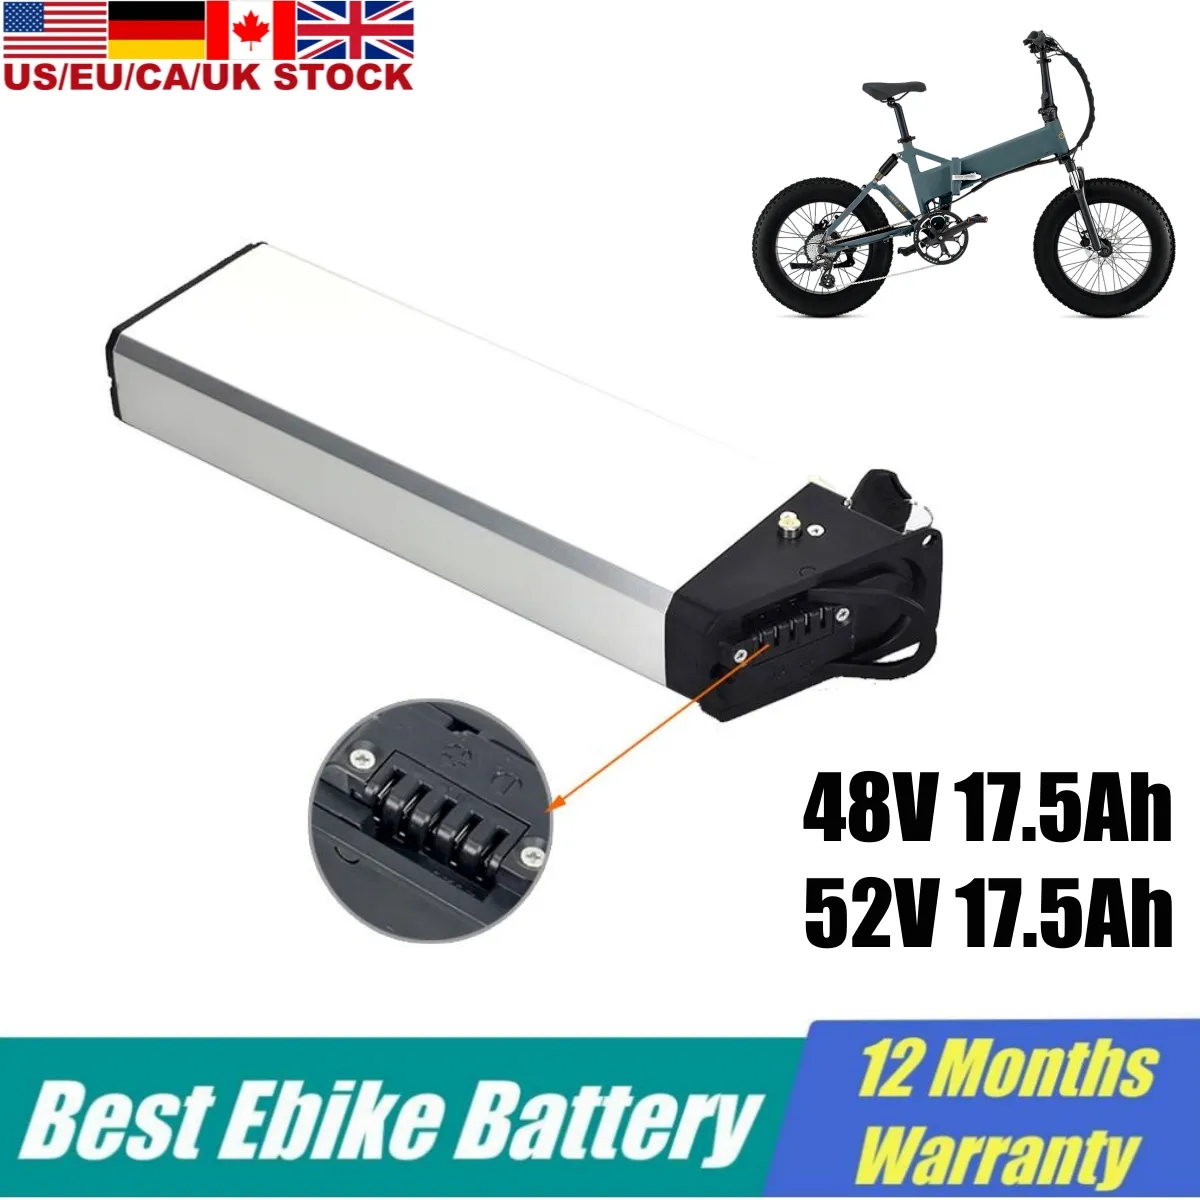 Yamee gros pneu Ebike batterie 48v 17.5Ah pour Mate X vélo électrique batterie au Lithium 750W 52v caché 13ah